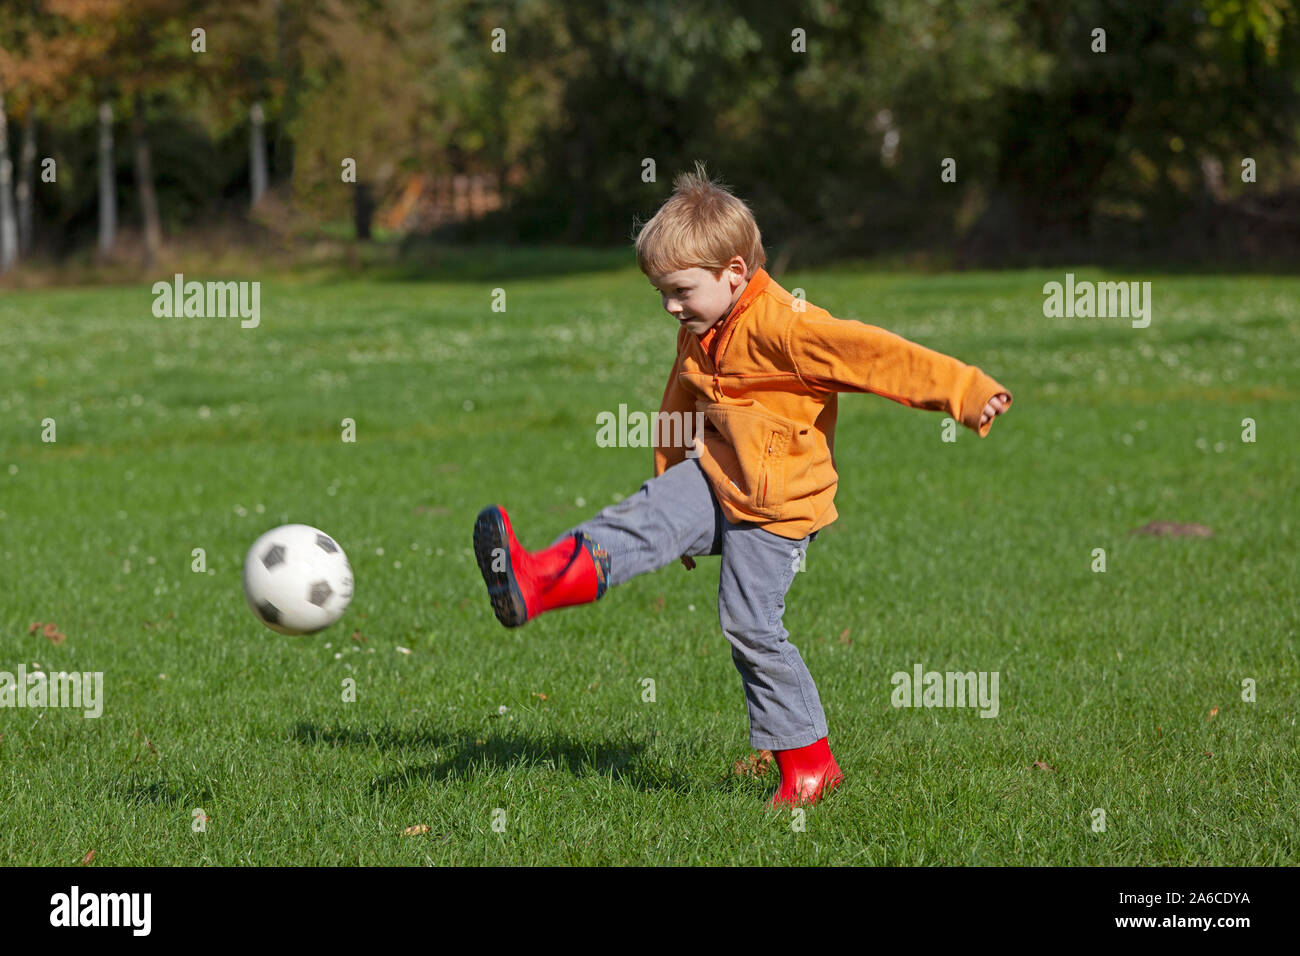 Un petit garçon joue au football. Banque D'Images